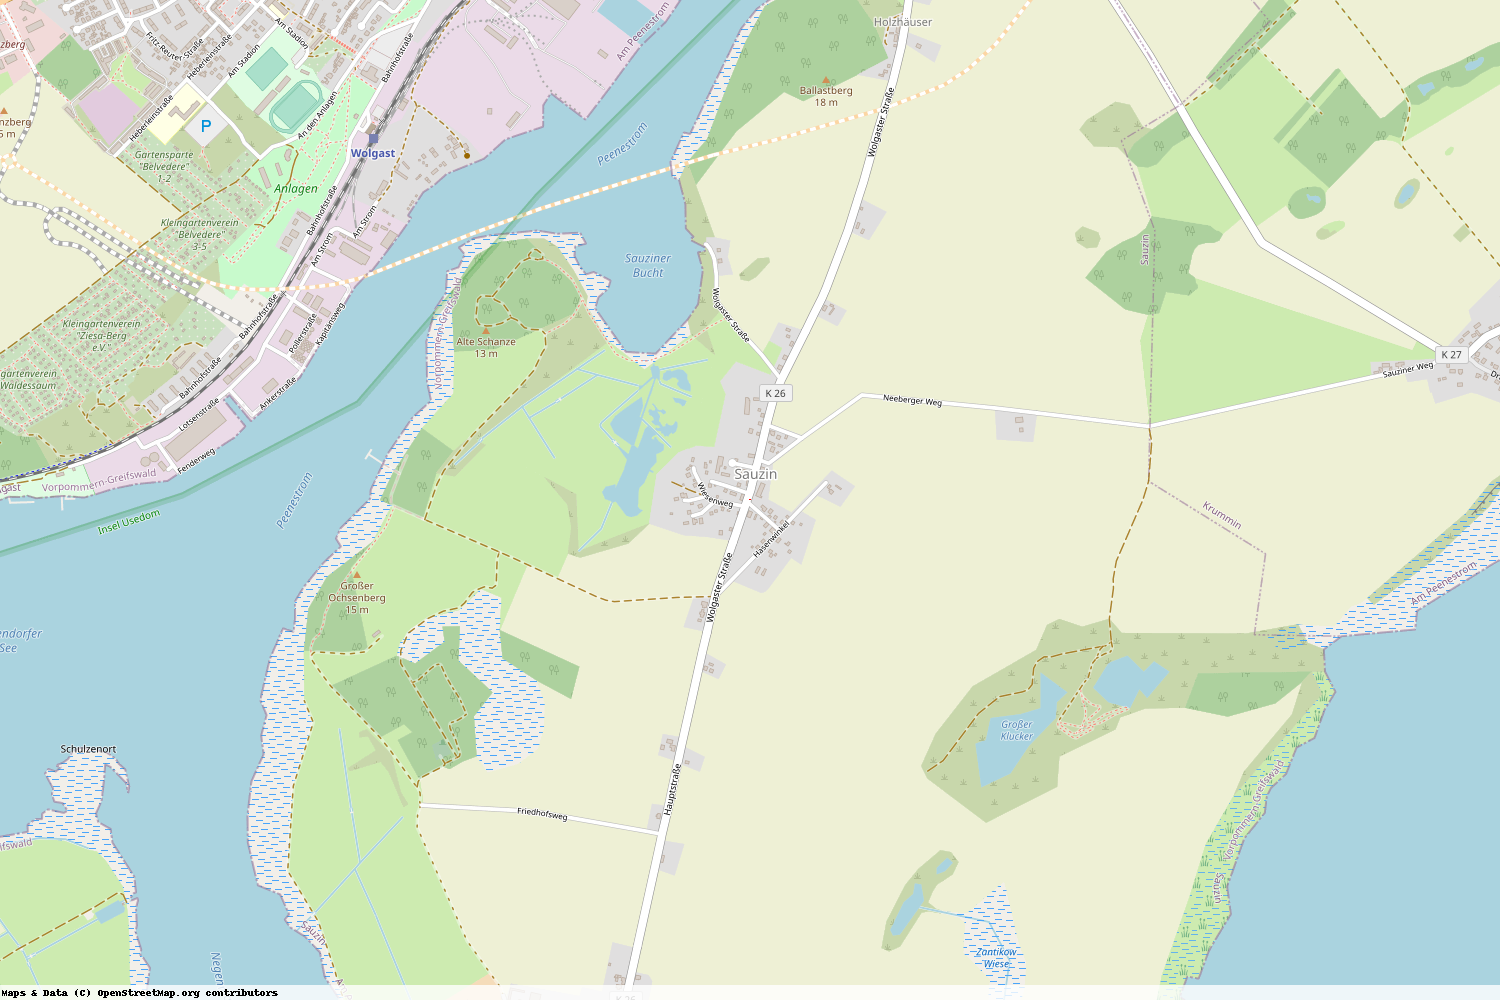 Ist gerade Stromausfall in Mecklenburg-Vorpommern - Vorpommern-Greifswald - Sauzin?